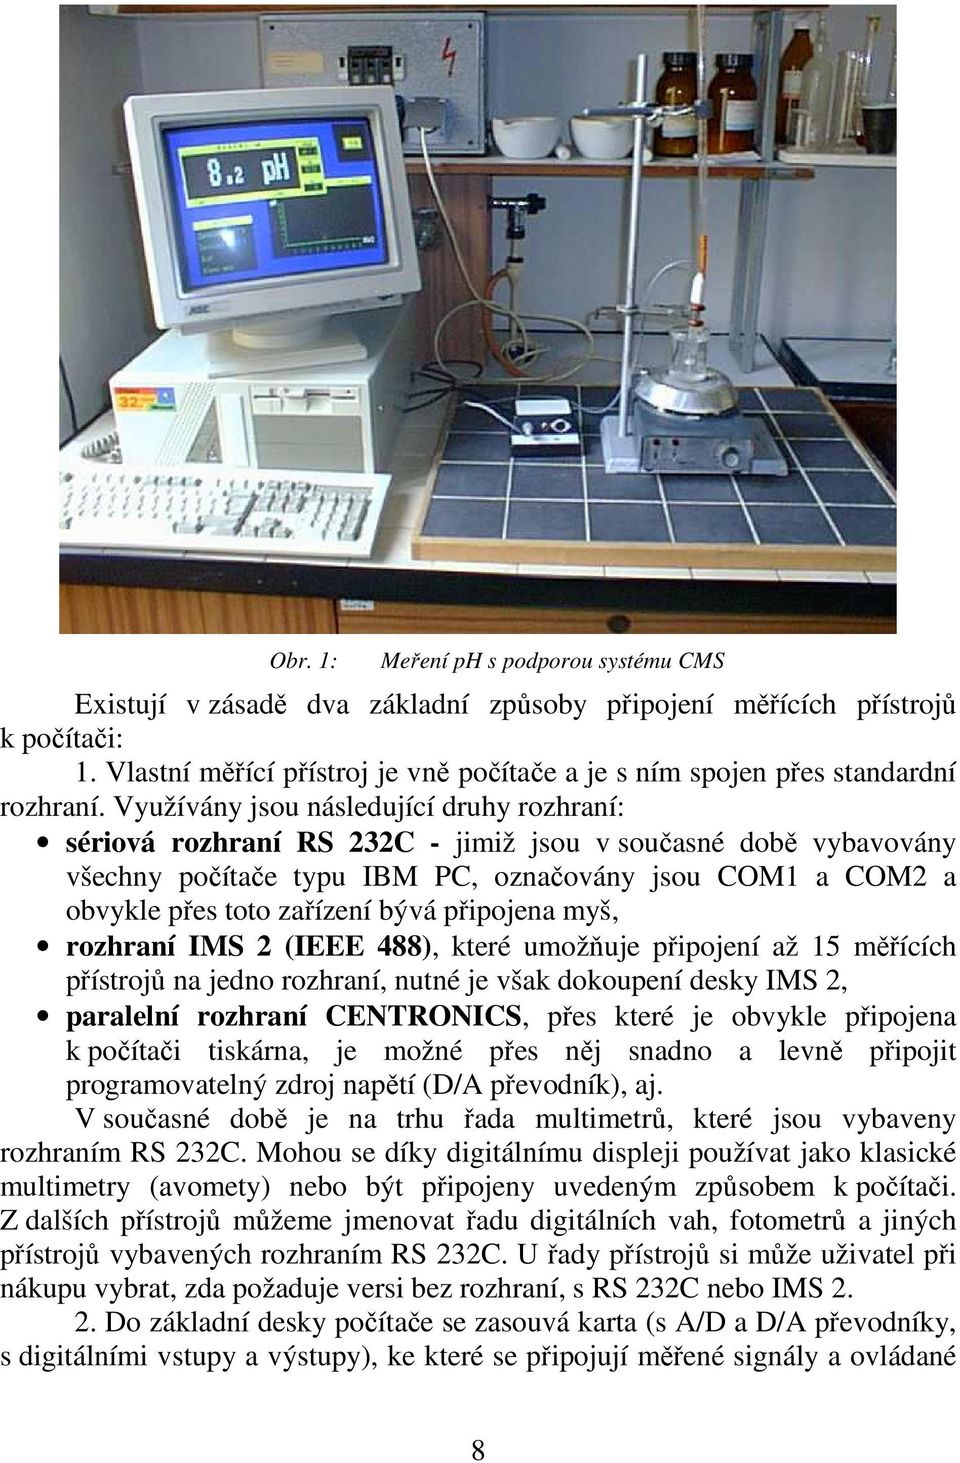 Využívány jsou následující druhy rozhraní: sériová rozhraní RS 232C - jimiž jsou v současné době vybavovány všechny počítače typu IBM PC, označovány jsou COM1 a COM2 a obvykle přes toto zařízení bývá